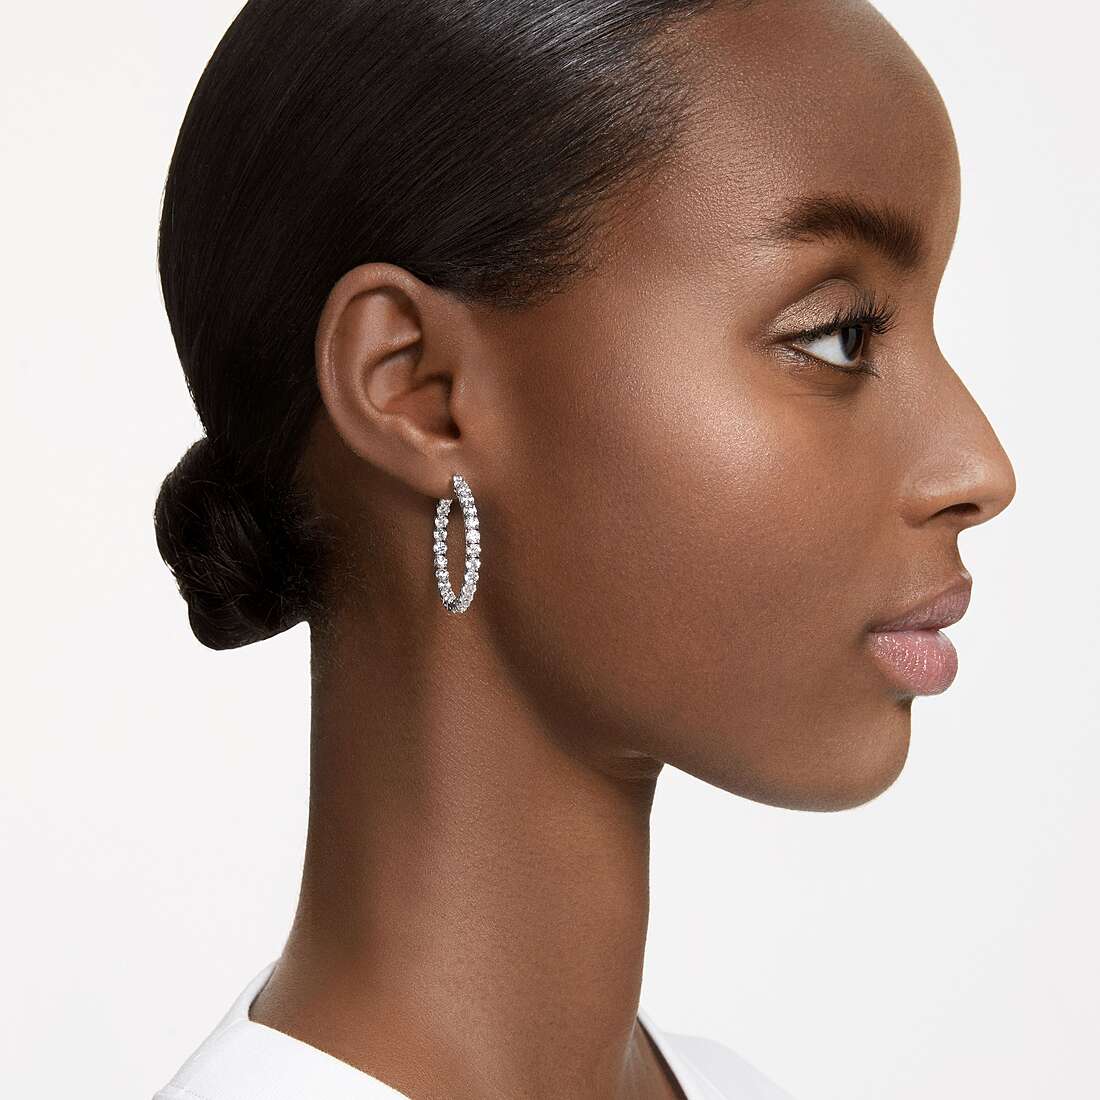 Swarovski earrings woman 5647715 wearing